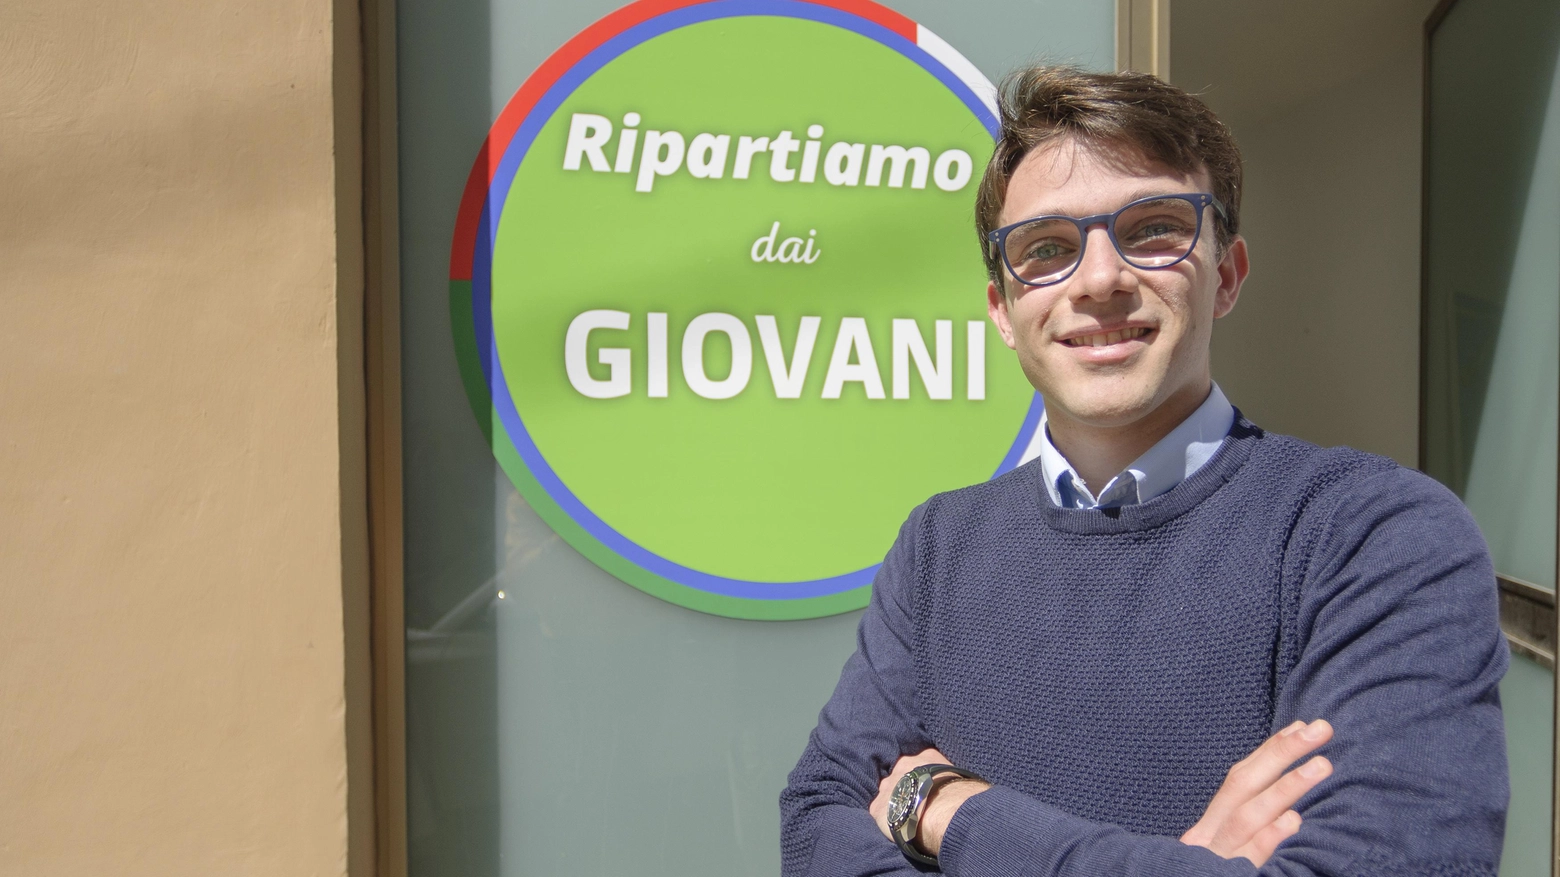 Il primato in Italia  "Io, il più giovane  candidato sindaco  Non possono ignorarci"